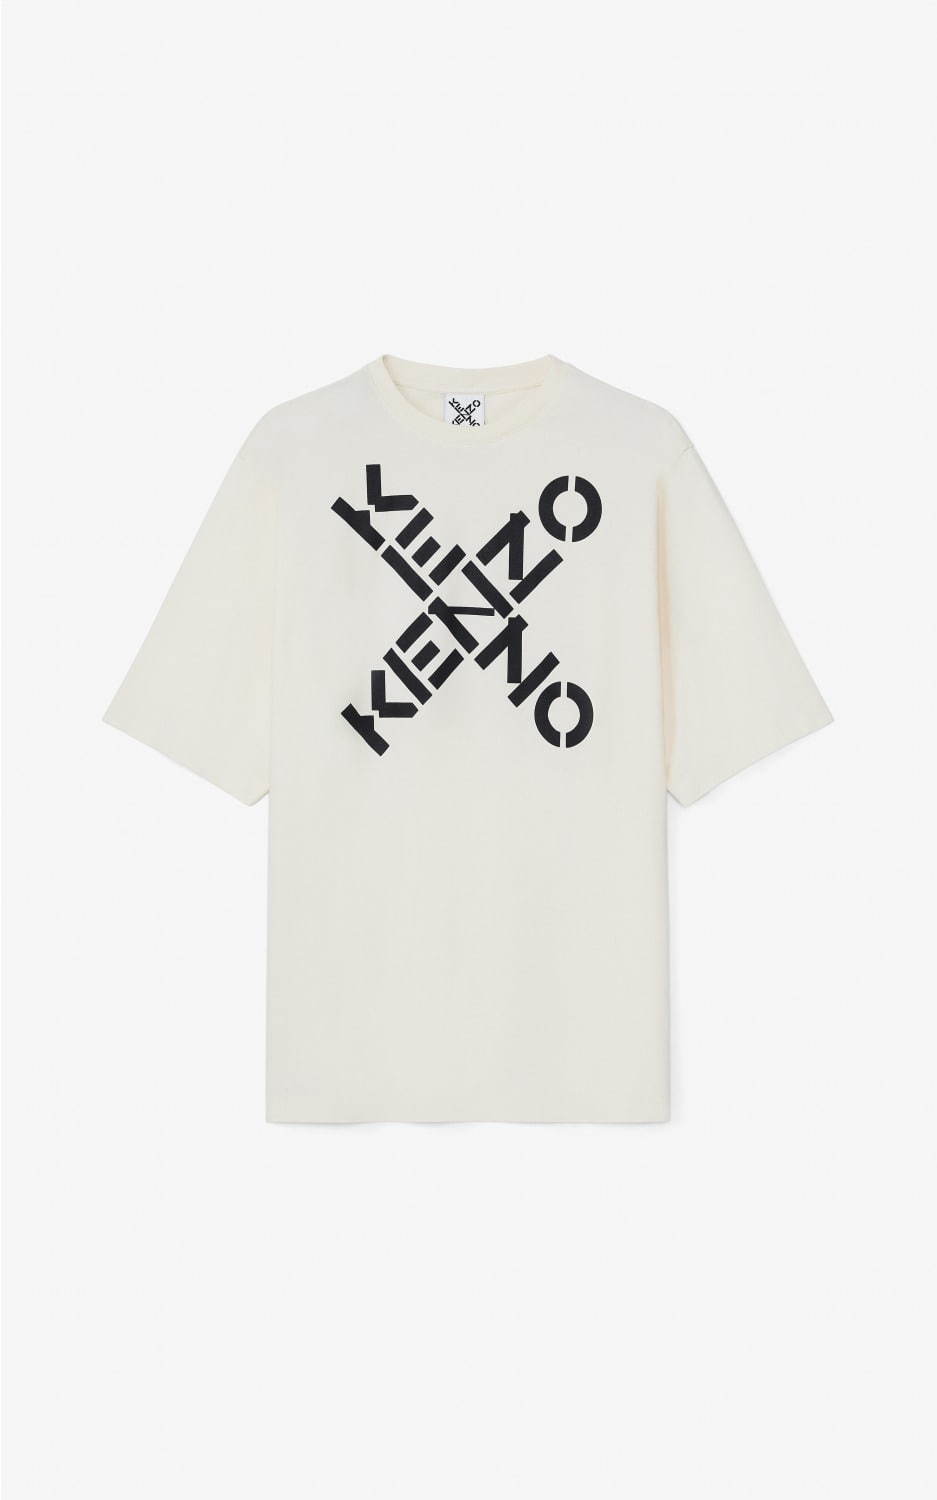 ケンゾーの新ライン「ケンゾー スポーツ」ロゴを配したTシャツや